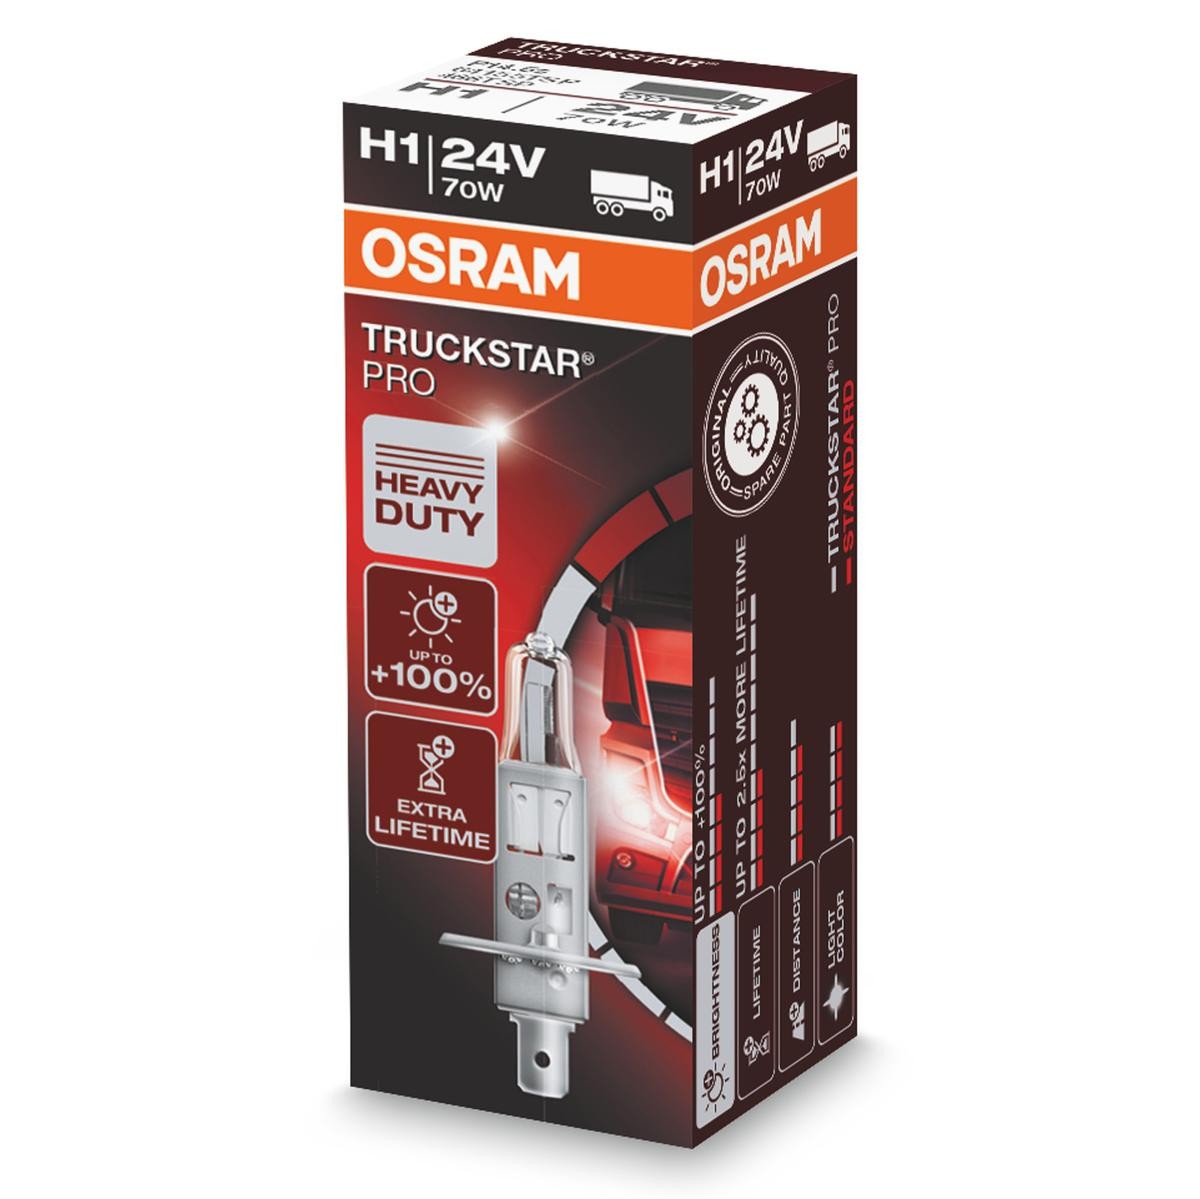 OSRAM TRUCKSTAR PRO 64155TSP Bulb, spotlight H1 24V 70W P14.5s, 3900K, Halogen